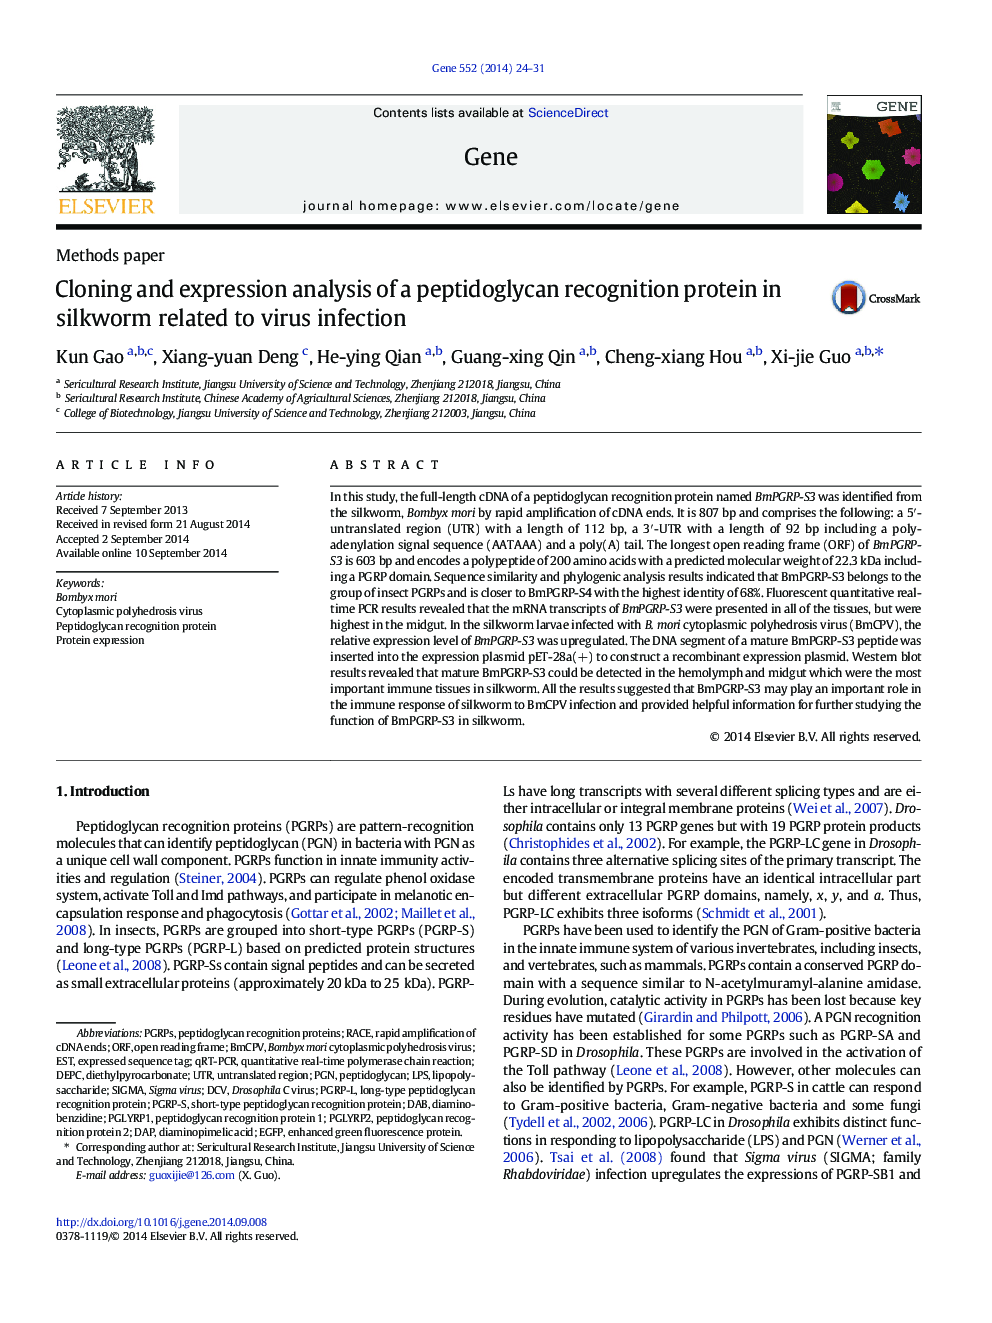 تجزیه و تحلیل کلونینگ و بیان پروتئین شناختی پپتیدوگلیکان در کرم ابریشم مرتبط با عفونت ویروس 